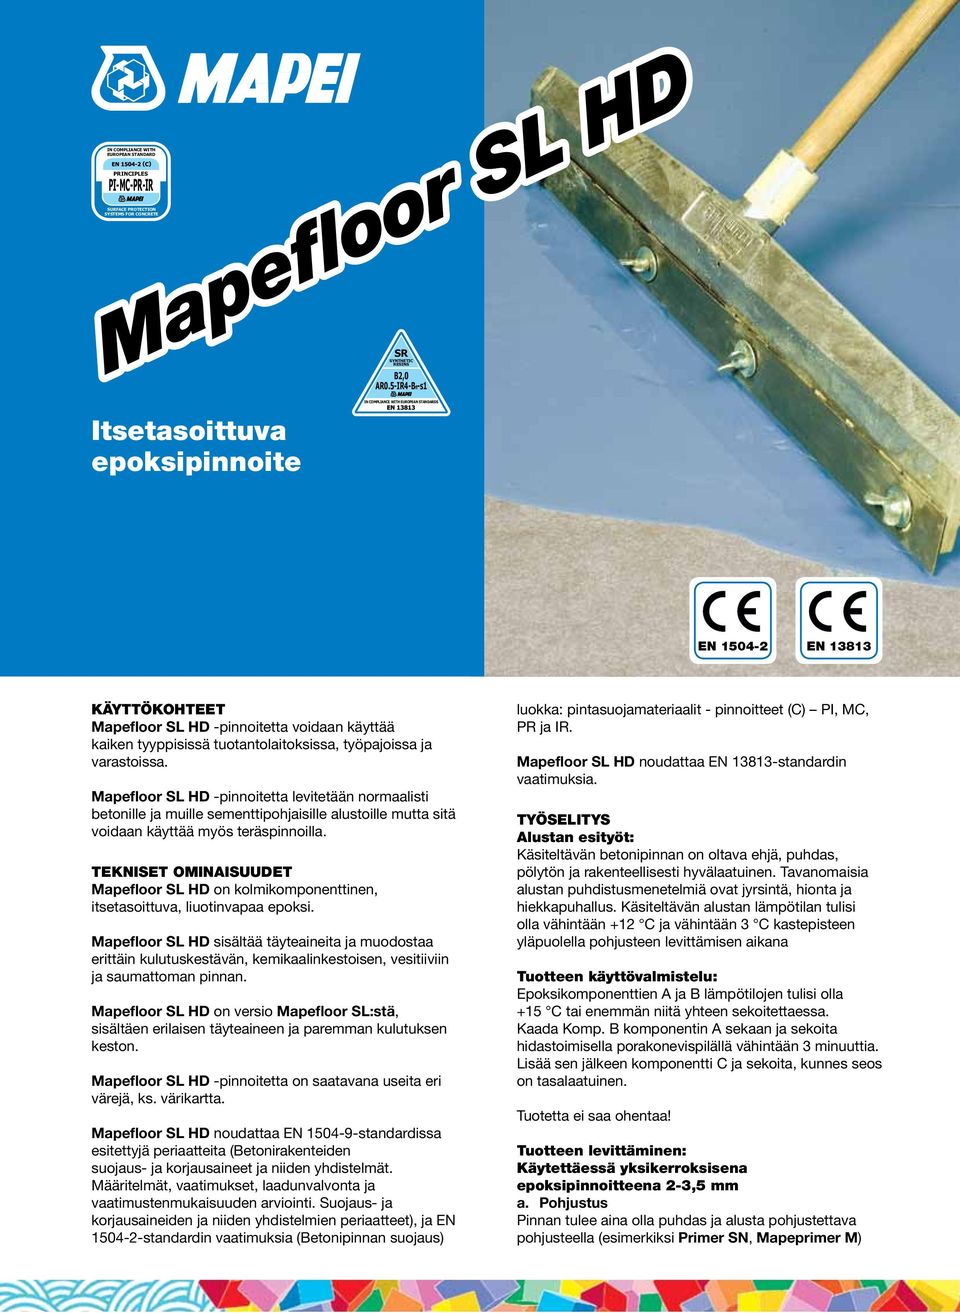 työpajoissa ja varastoissa. Mapefloor SL HD -pinnoitetta levitetään normaalisti betonille ja muille sementtipohjaisille alustoille mutta sitä voidaan käyttää myös teräspinnoilla.